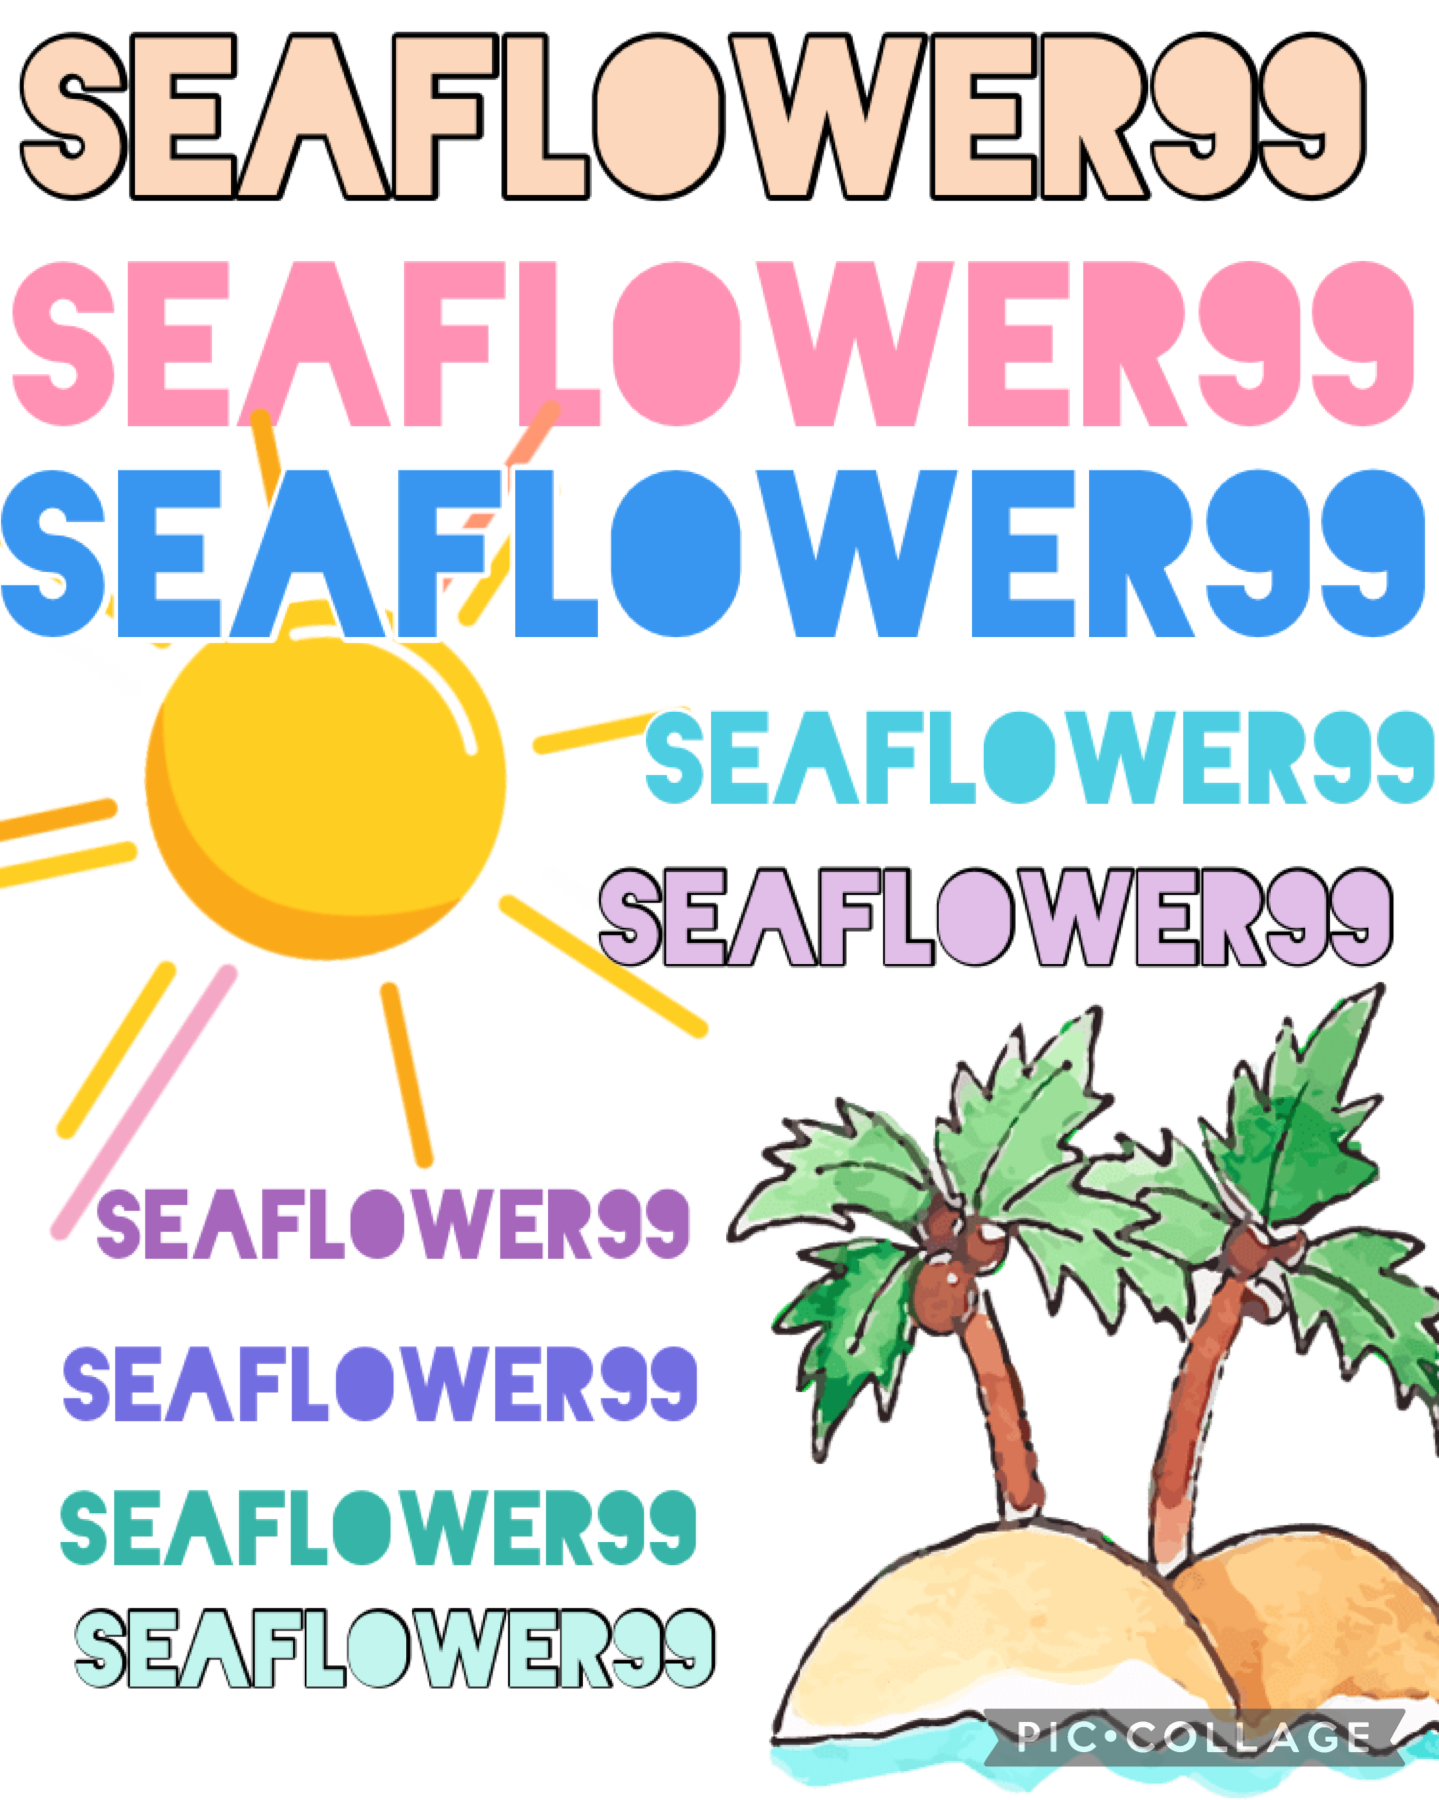 Follow @Seaflower99